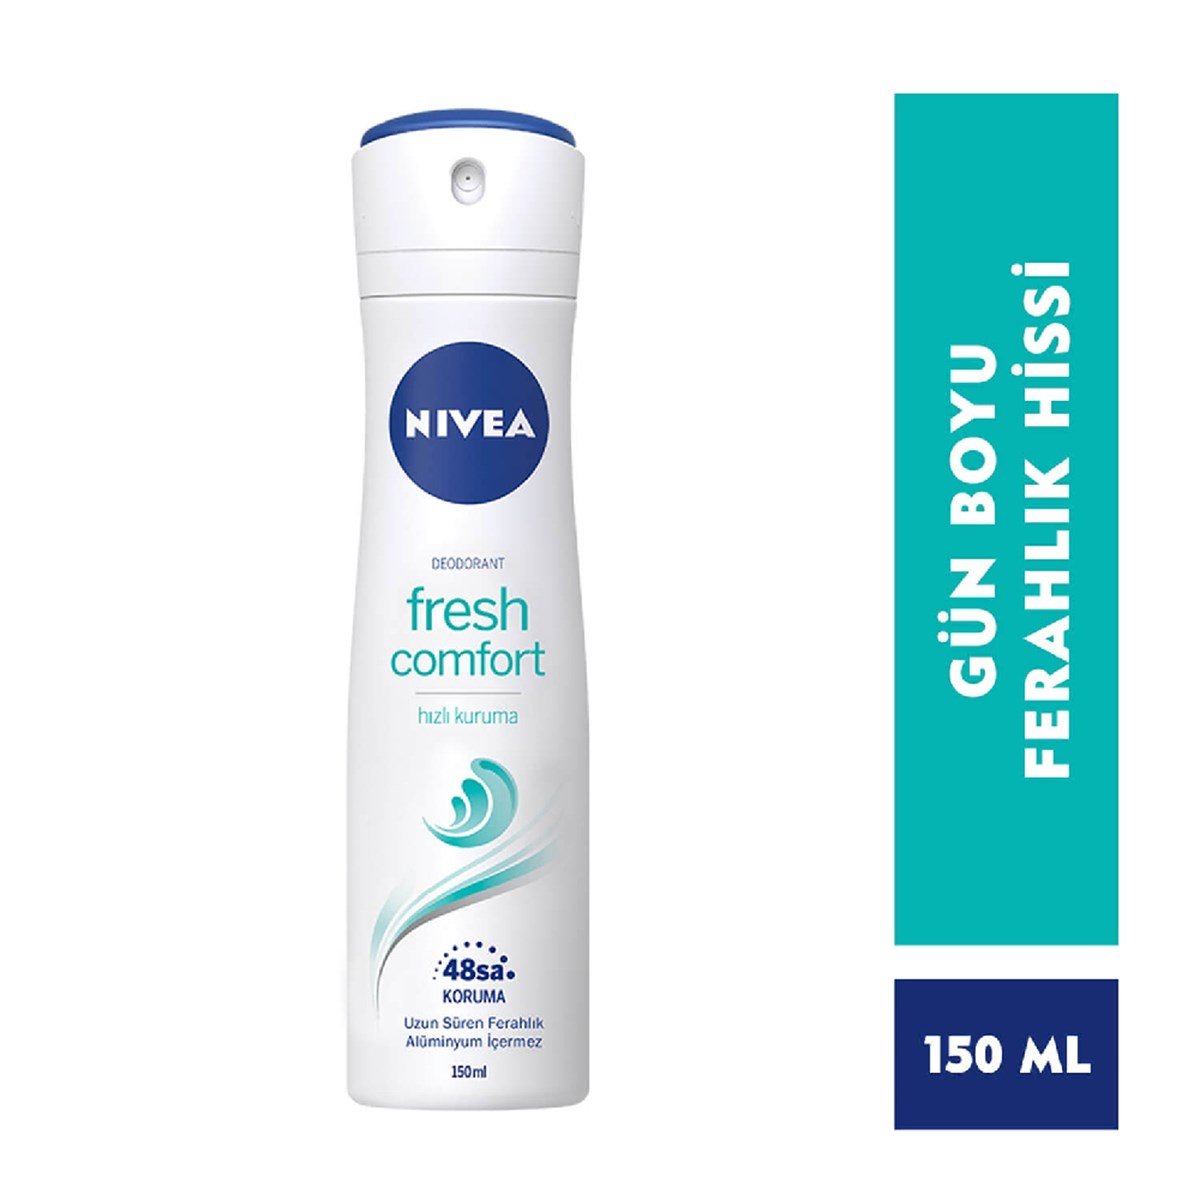 Nivea Deodorant Fresh Comfort Kadın 150ml - Platin